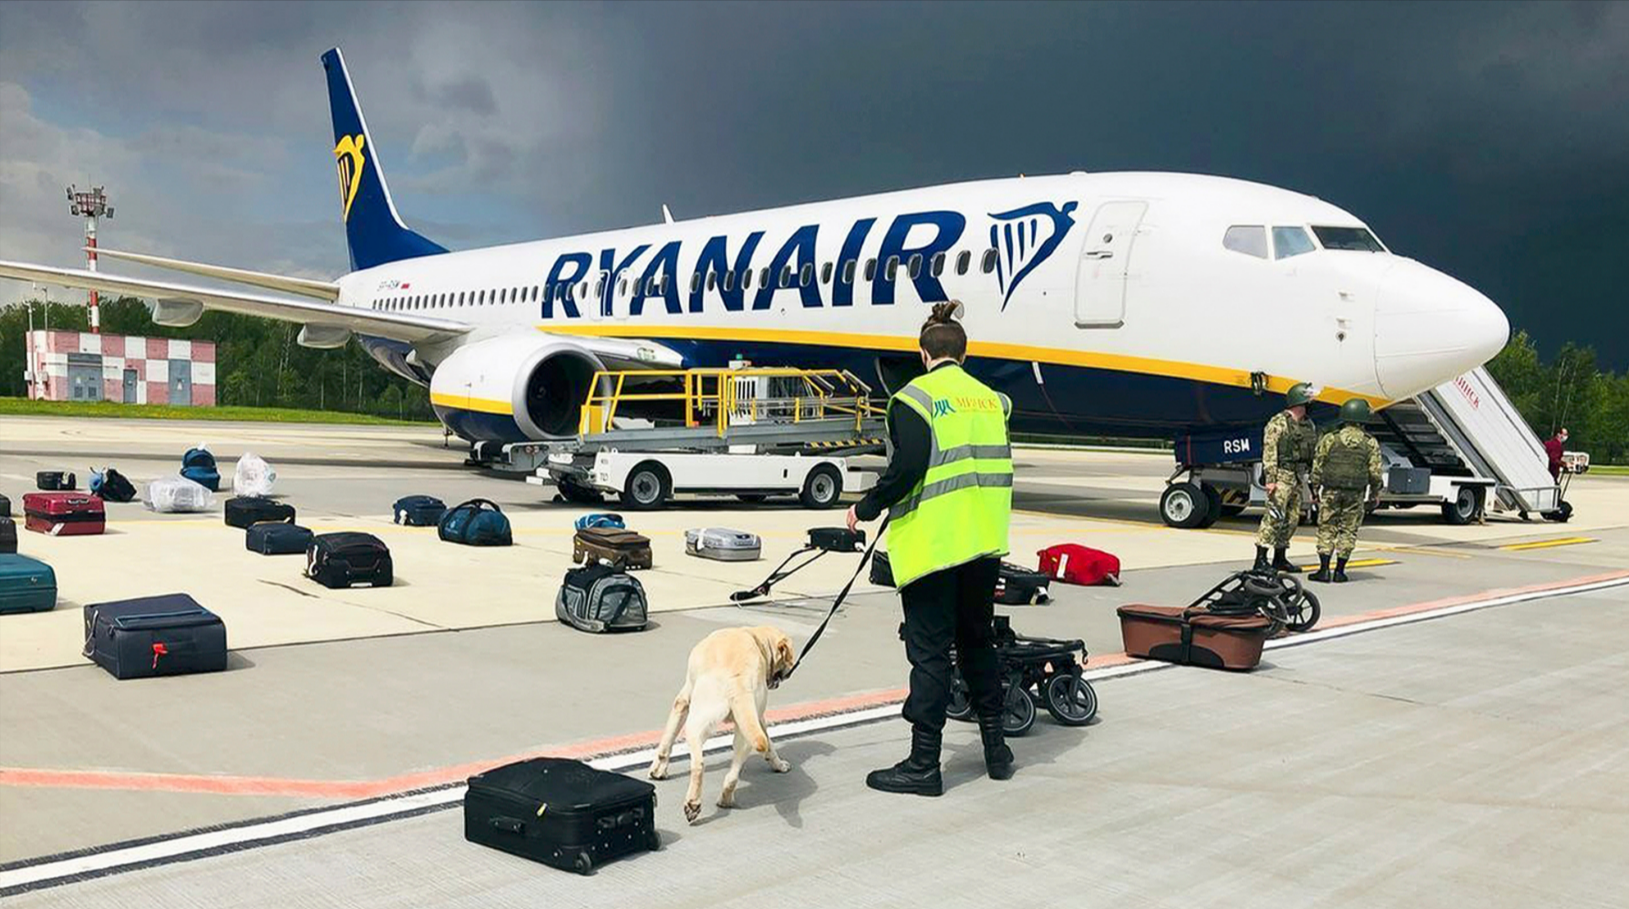 Leiche in Ryanair-Maschine! Tragischer Todesfall in der Luft - Pilot entscheidet sich zur Notlandung